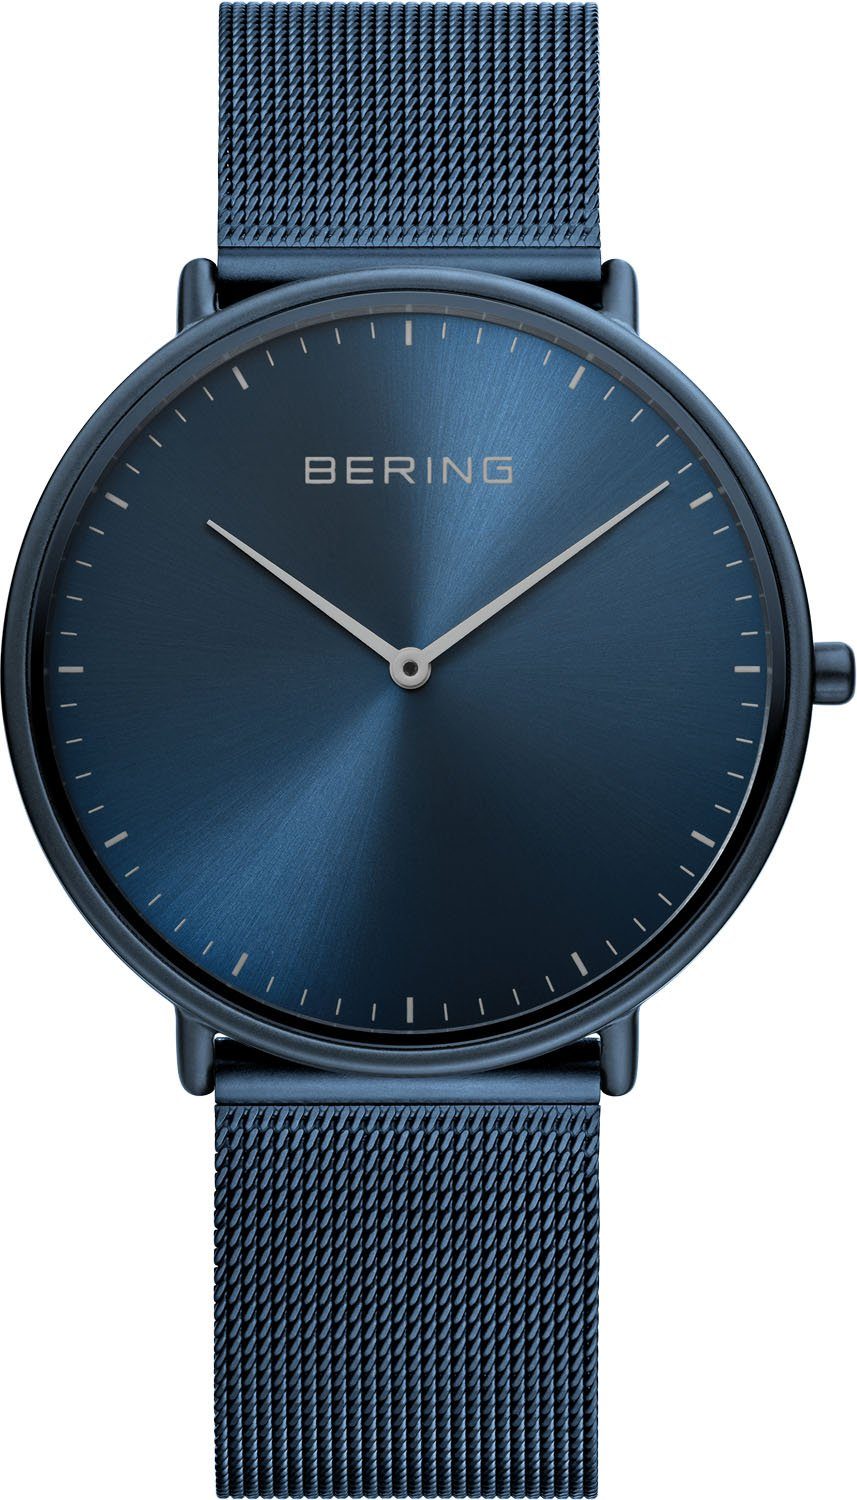 Uhren OTTO Bering online | » Uhren kaufen Bering Günstige SALE